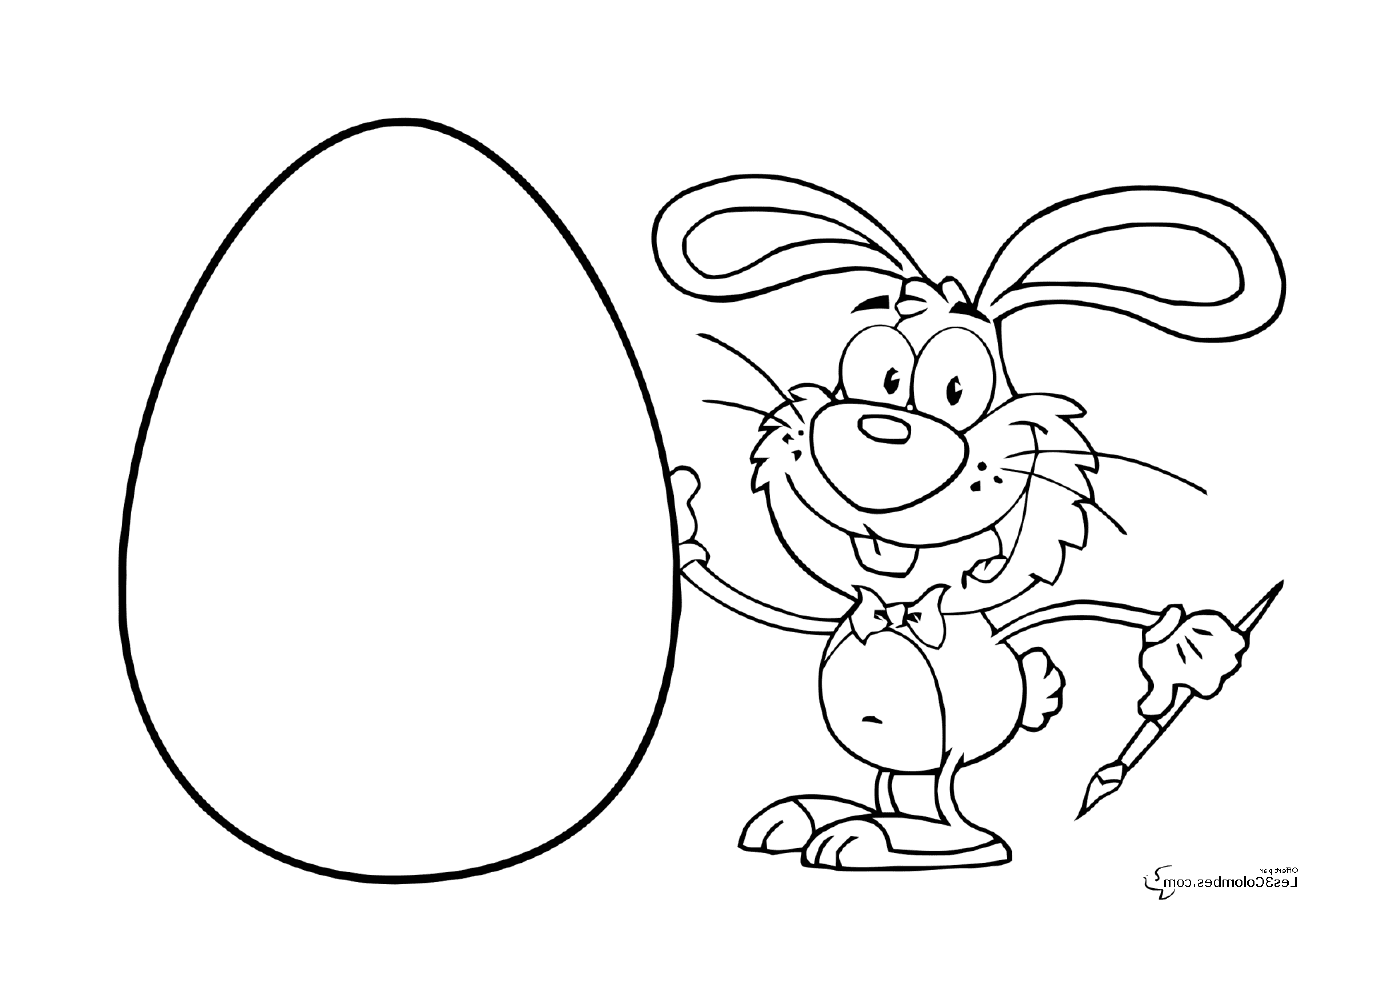  Coelho de Páscoa segurando um ovo 